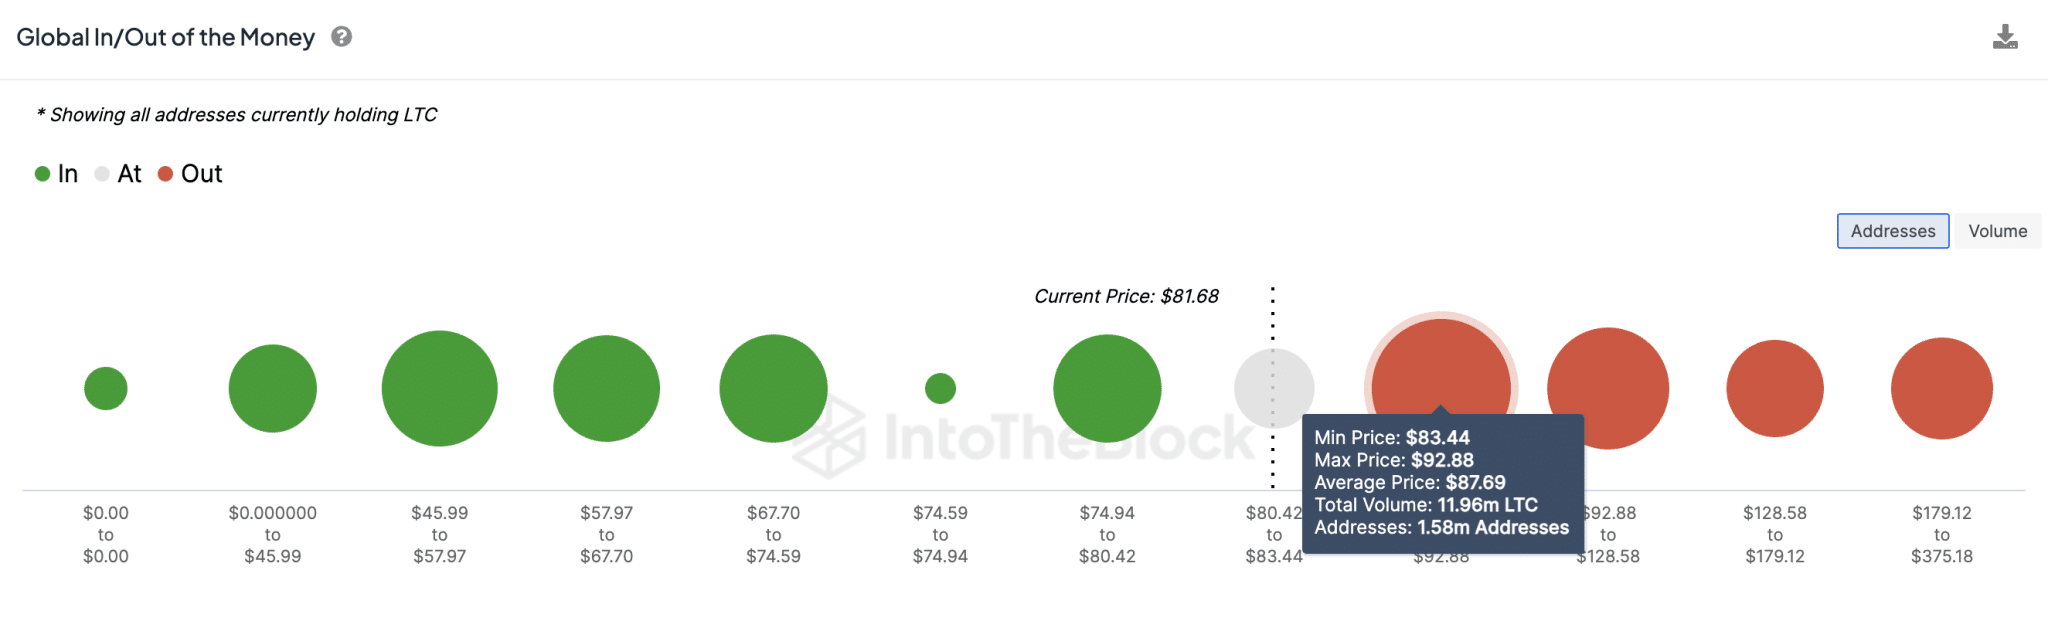 Прогноз цены Litecoin: что будет с LTC после преодоления уровня выше 80 долларов?